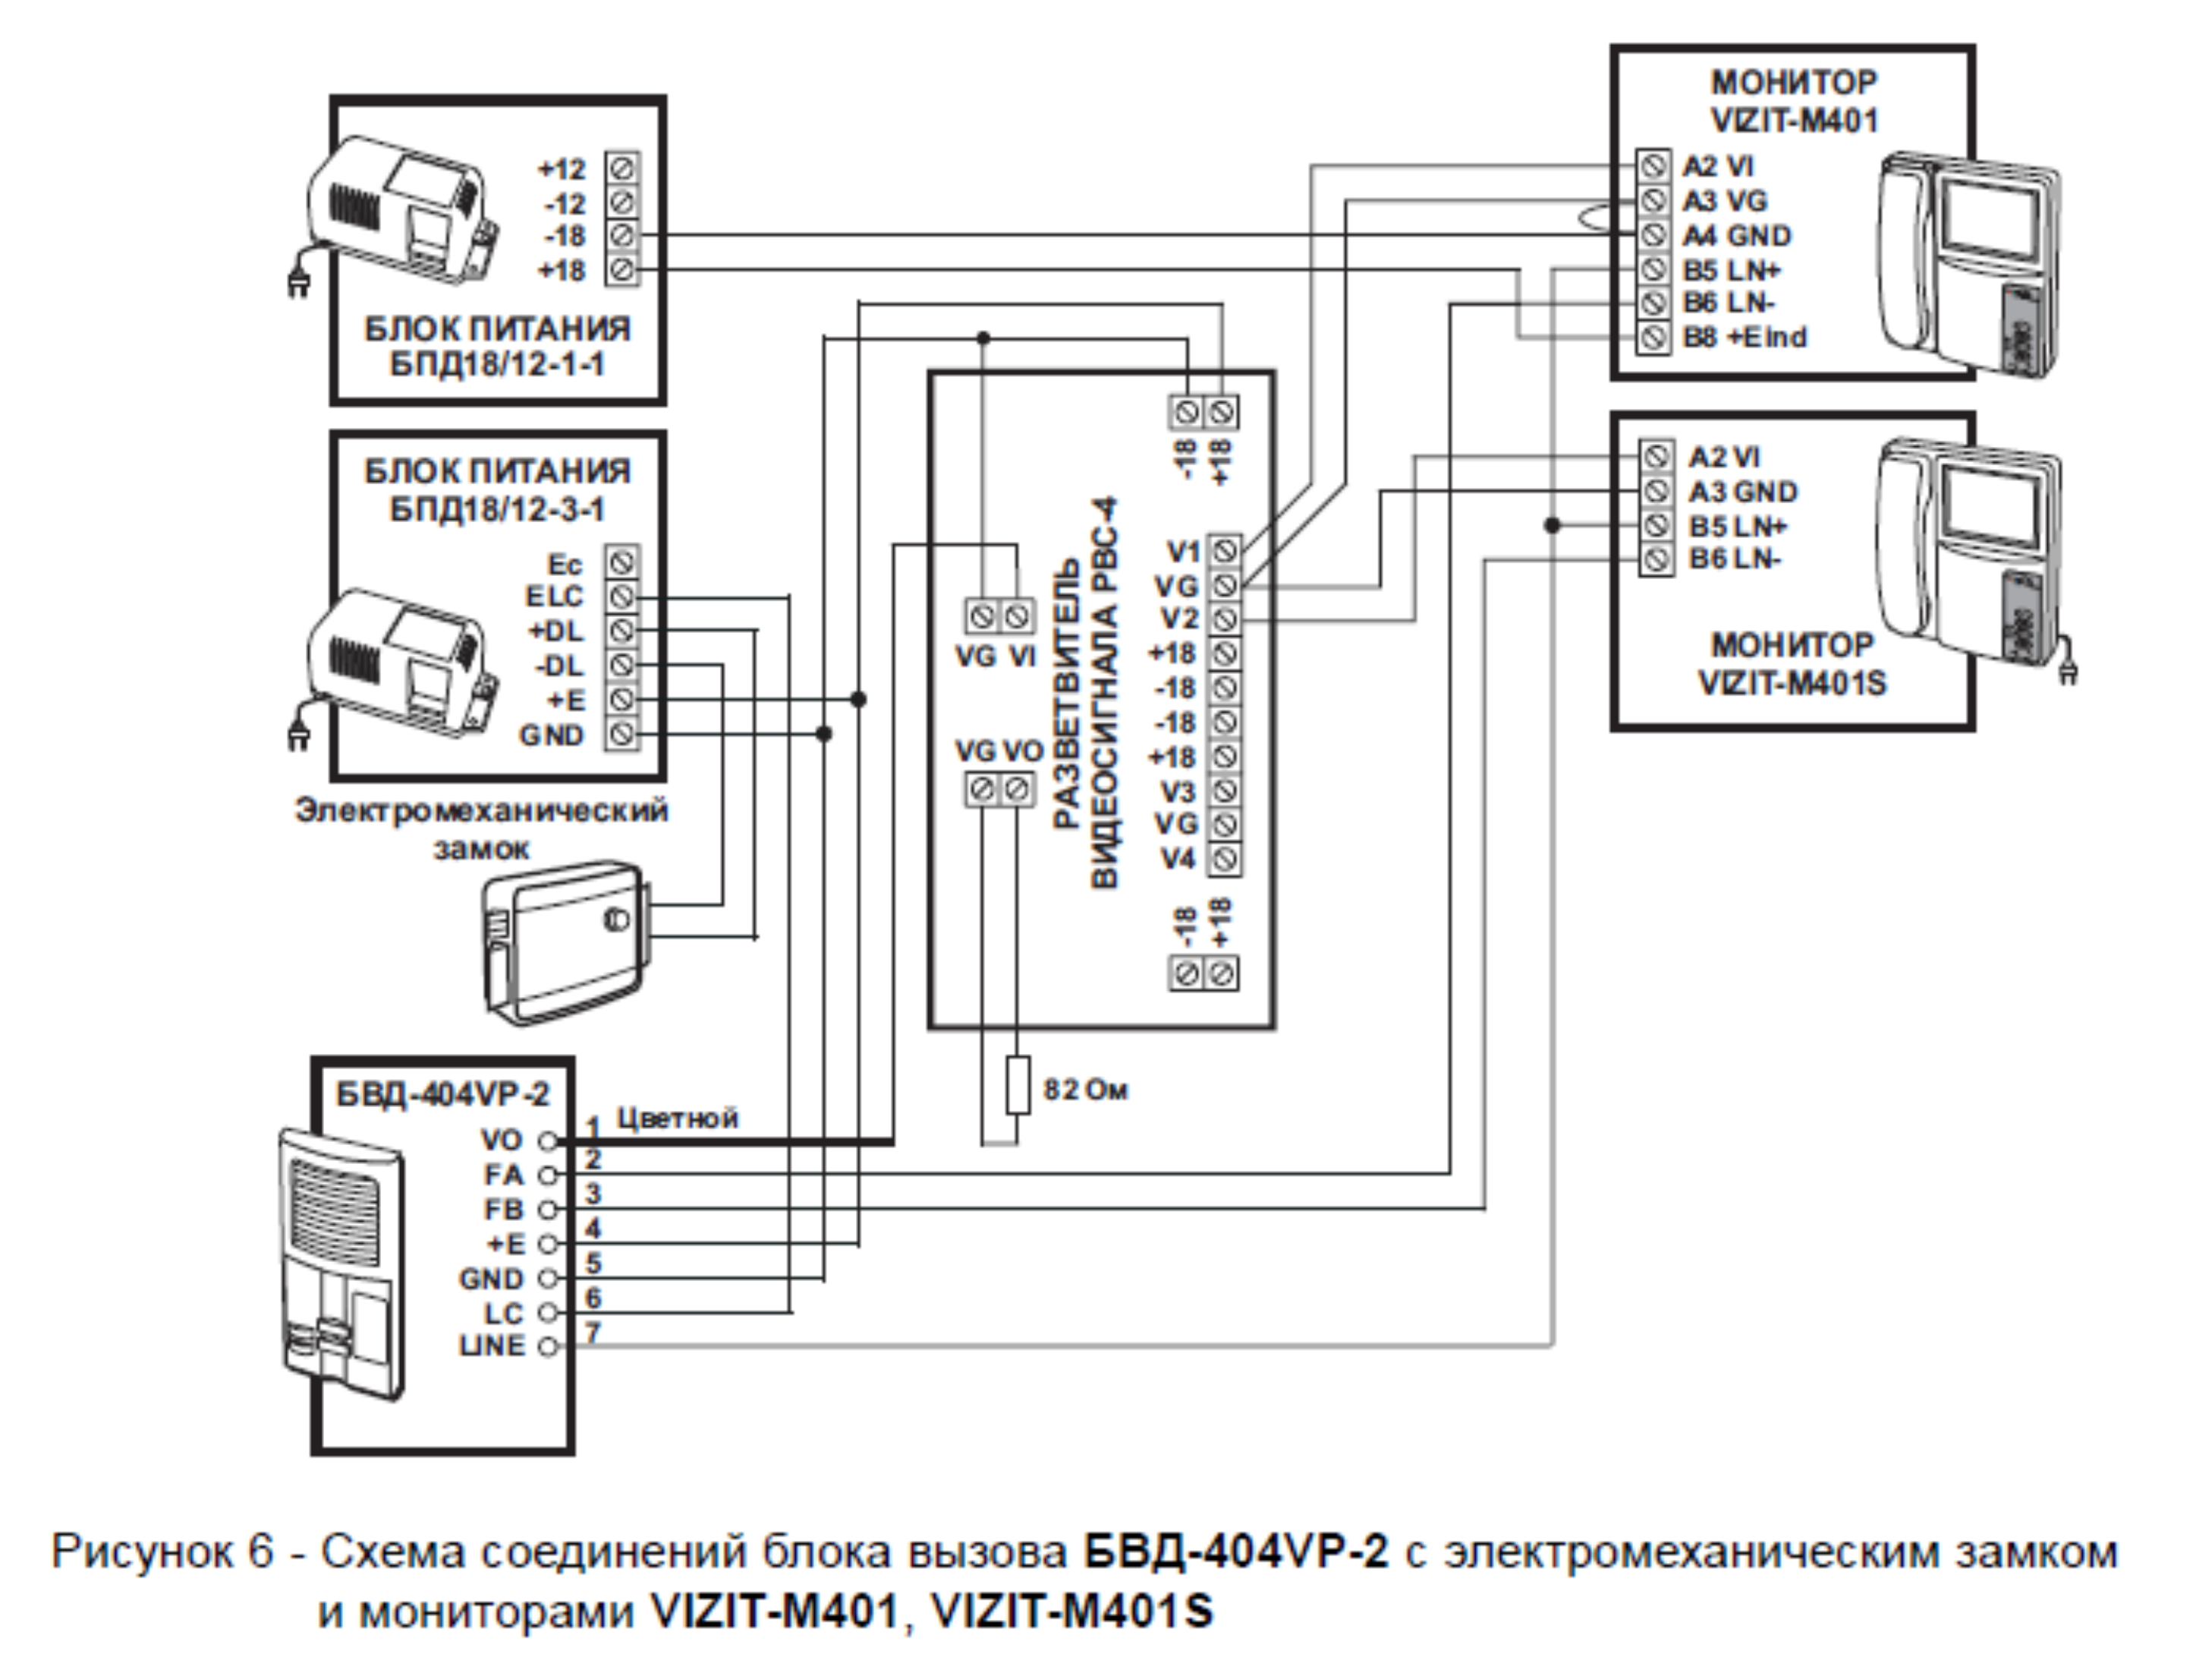 Рисунок 6 - Схема соединений блока вызова БВД-404VP-2 с электромеханическим замком и мониторами VIZIT-M401, VIZIT-M401S